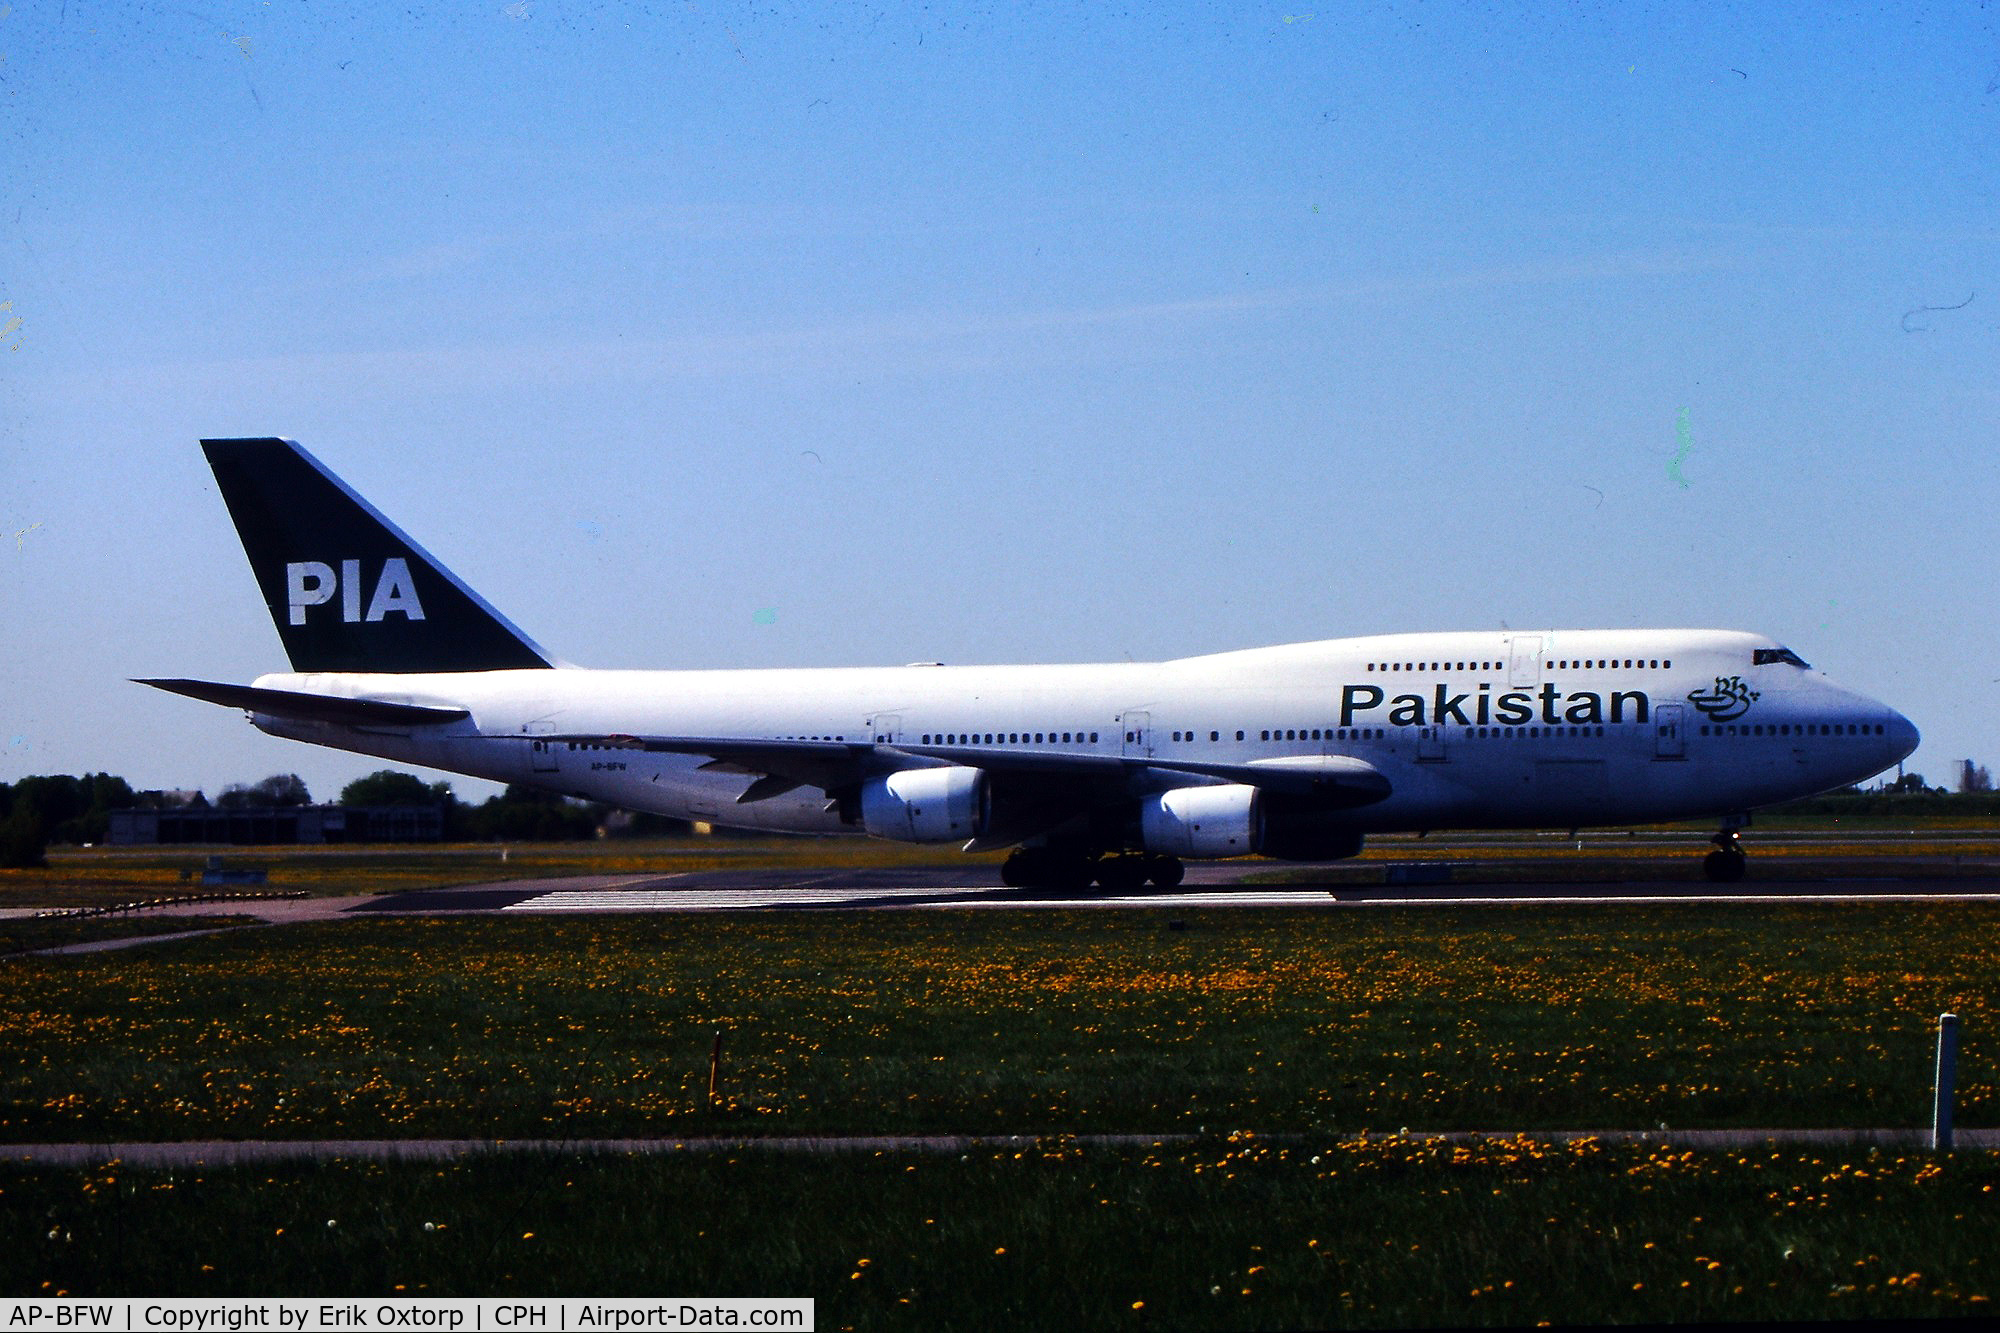 AP-BFW, 1985 Boeing 747-367 C/N 23221, AP-BFW ready for takeoff rw 04R
Scanned slide